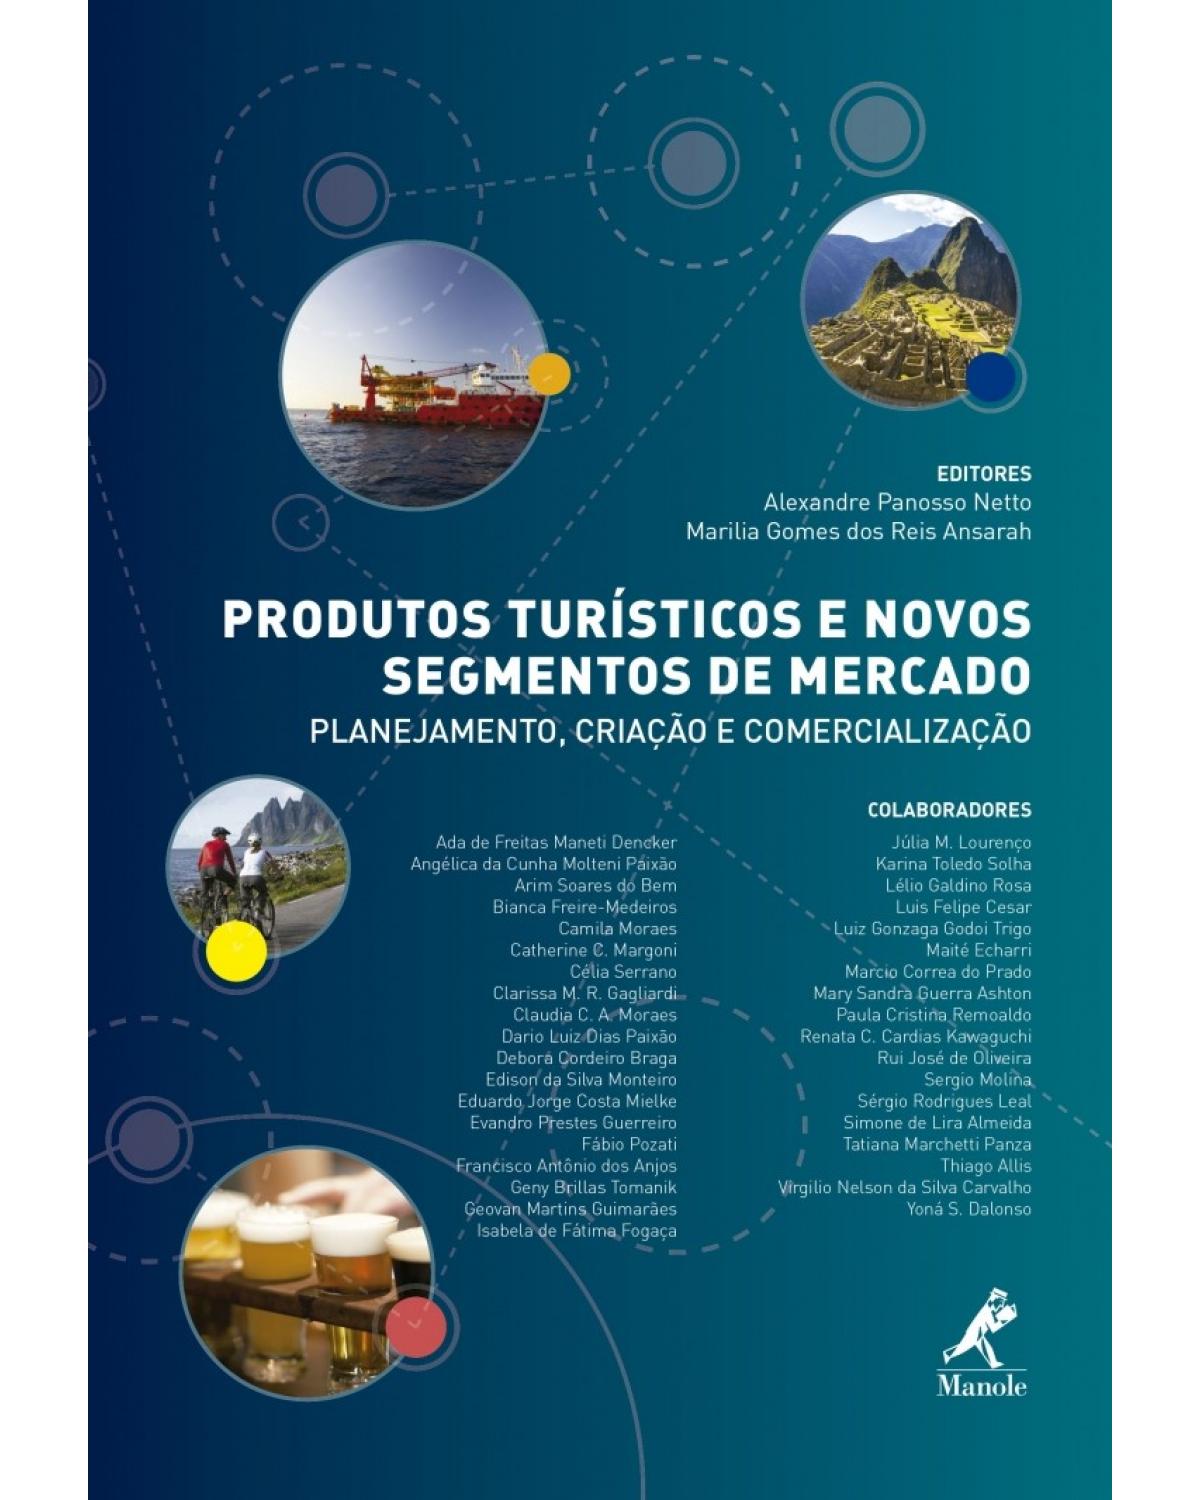 Produtos turísticos e novos segmentos de mercado - planejamento, criação e comercialização - 1ª Edição | 2015